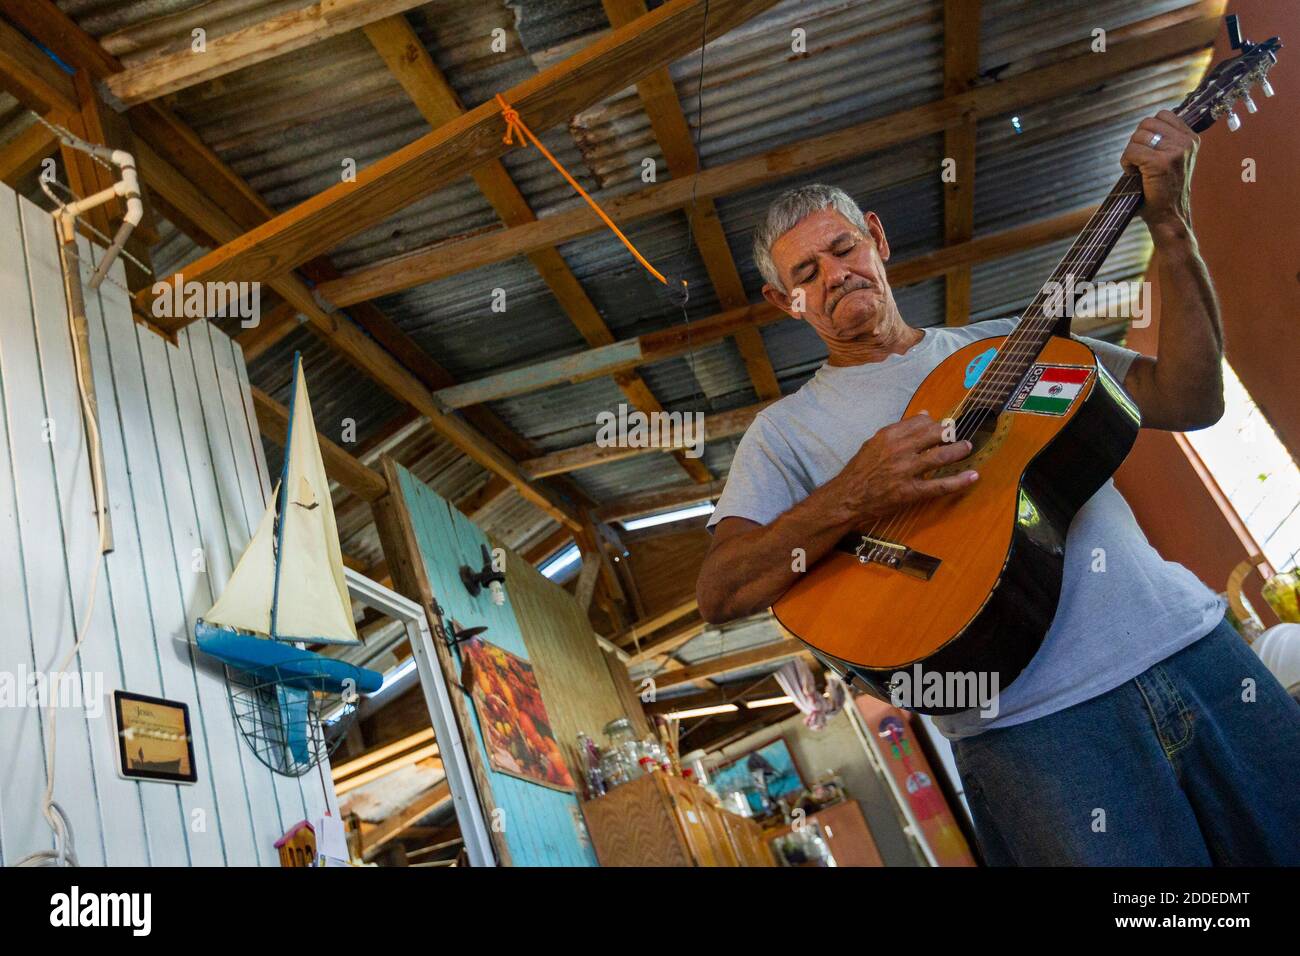 NO HAY PELÍCULA, NO HAY VIDEO, NO hay televisión, NO HAY DOCUMENTAL -  Guillermo José Torres, de 60 años, toca su guitarra en su casa de playa  dañada por el huracán en